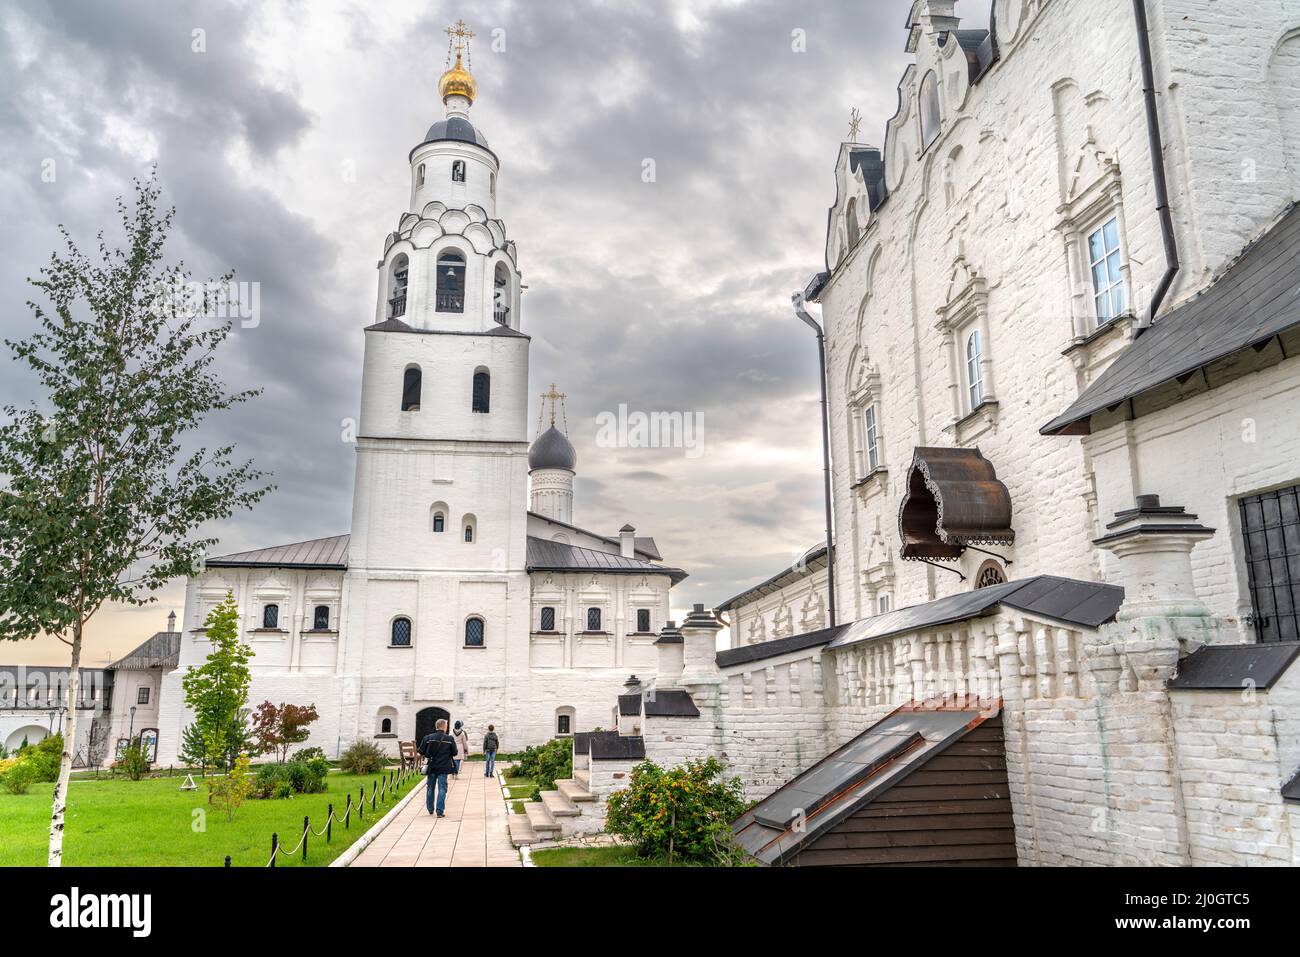 The Sviyazhsk mail monastery in Tatarstan Stock Photo